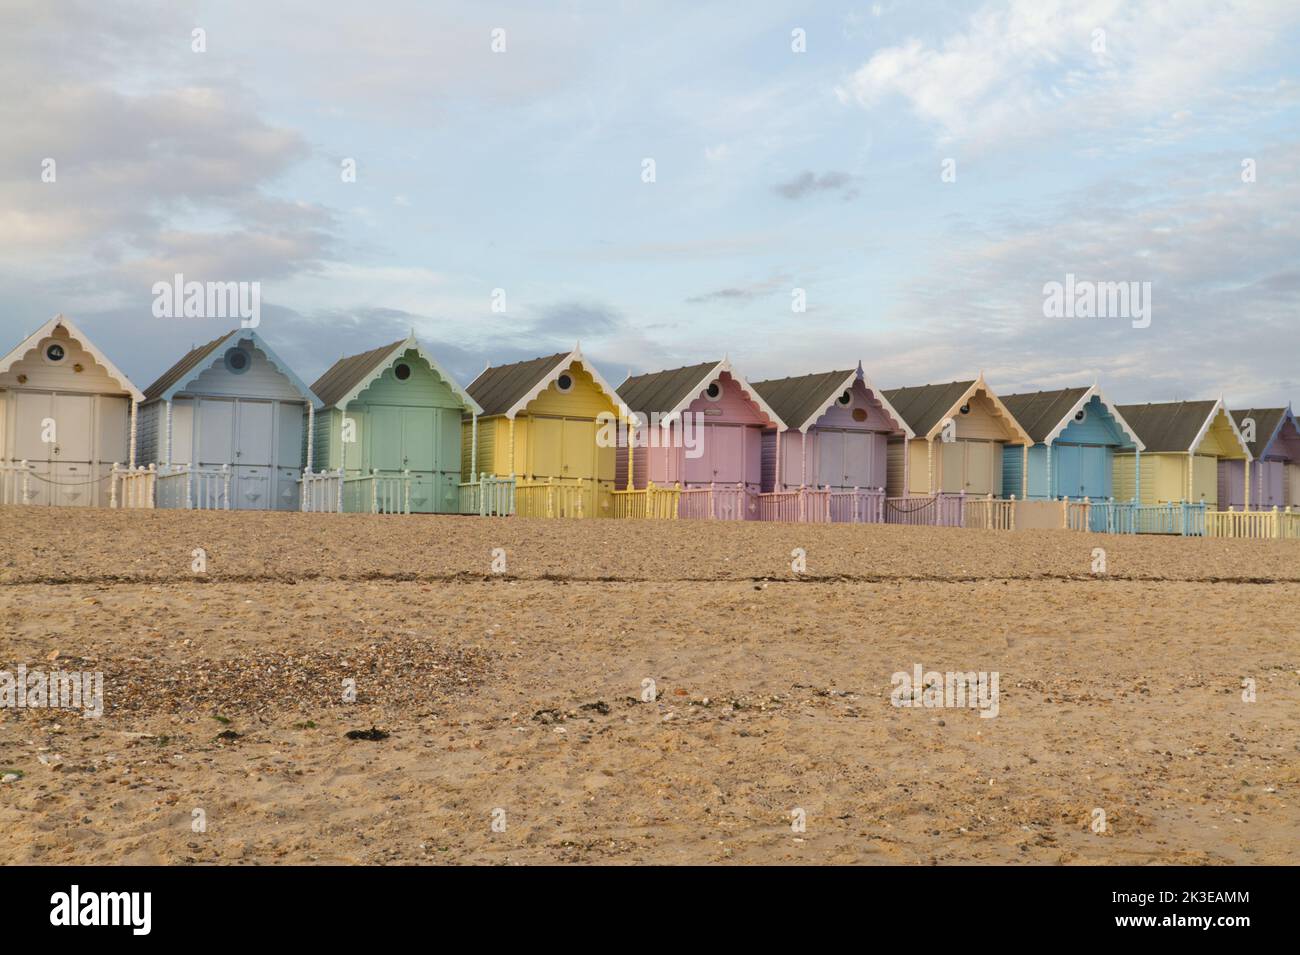 Die Strandhütten in West Mersea auf Mersea Island in Essex, eine Reihe sehr hübscher pastellfarbener Hütten, die bei Einheimischen und Besuchern sehr beliebt sind Stockfoto